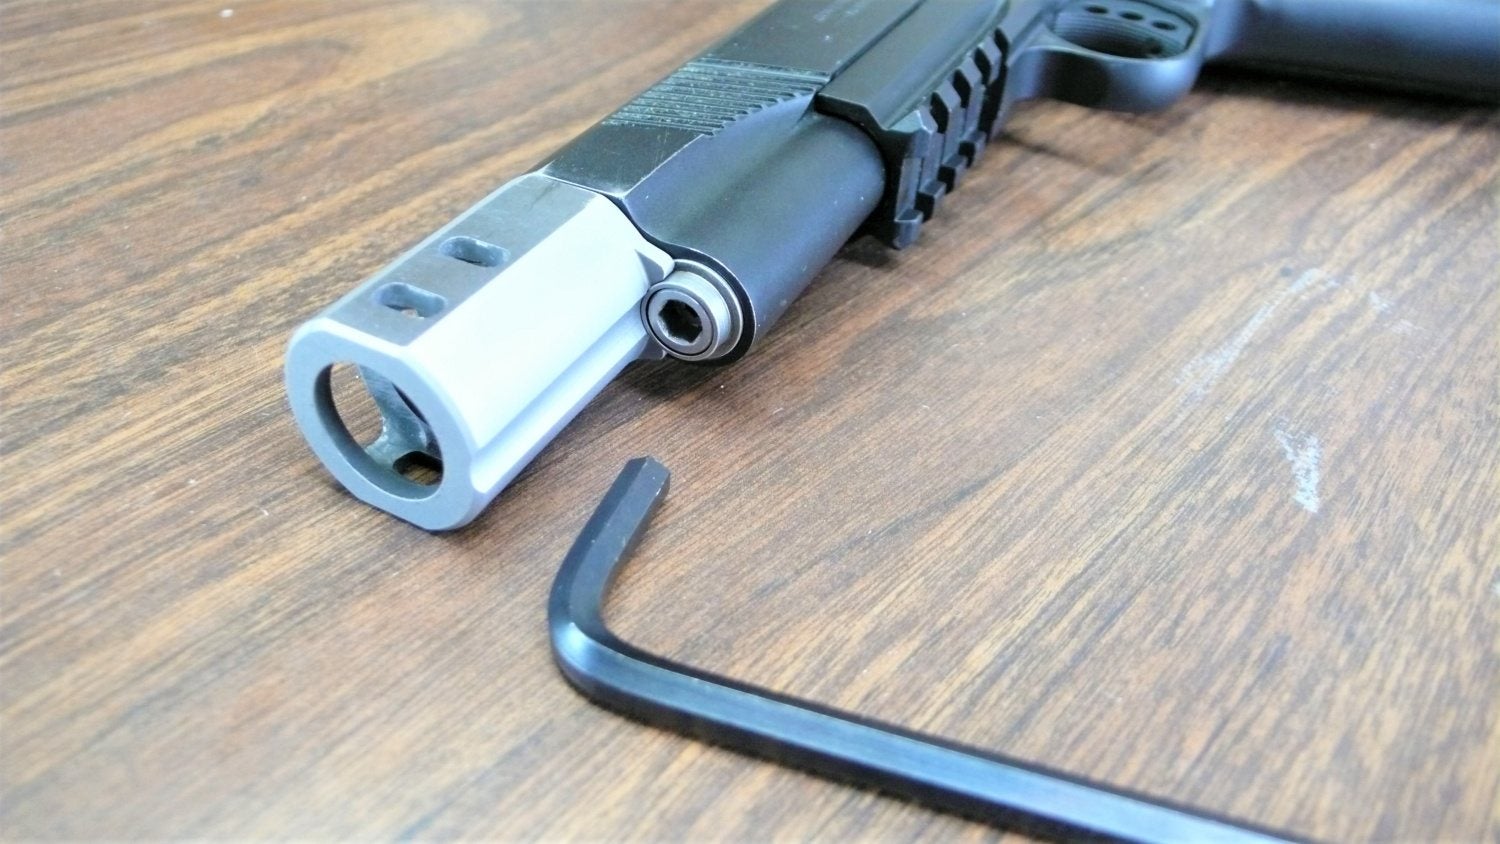 TFB Field Strip: Colt Rail Gun